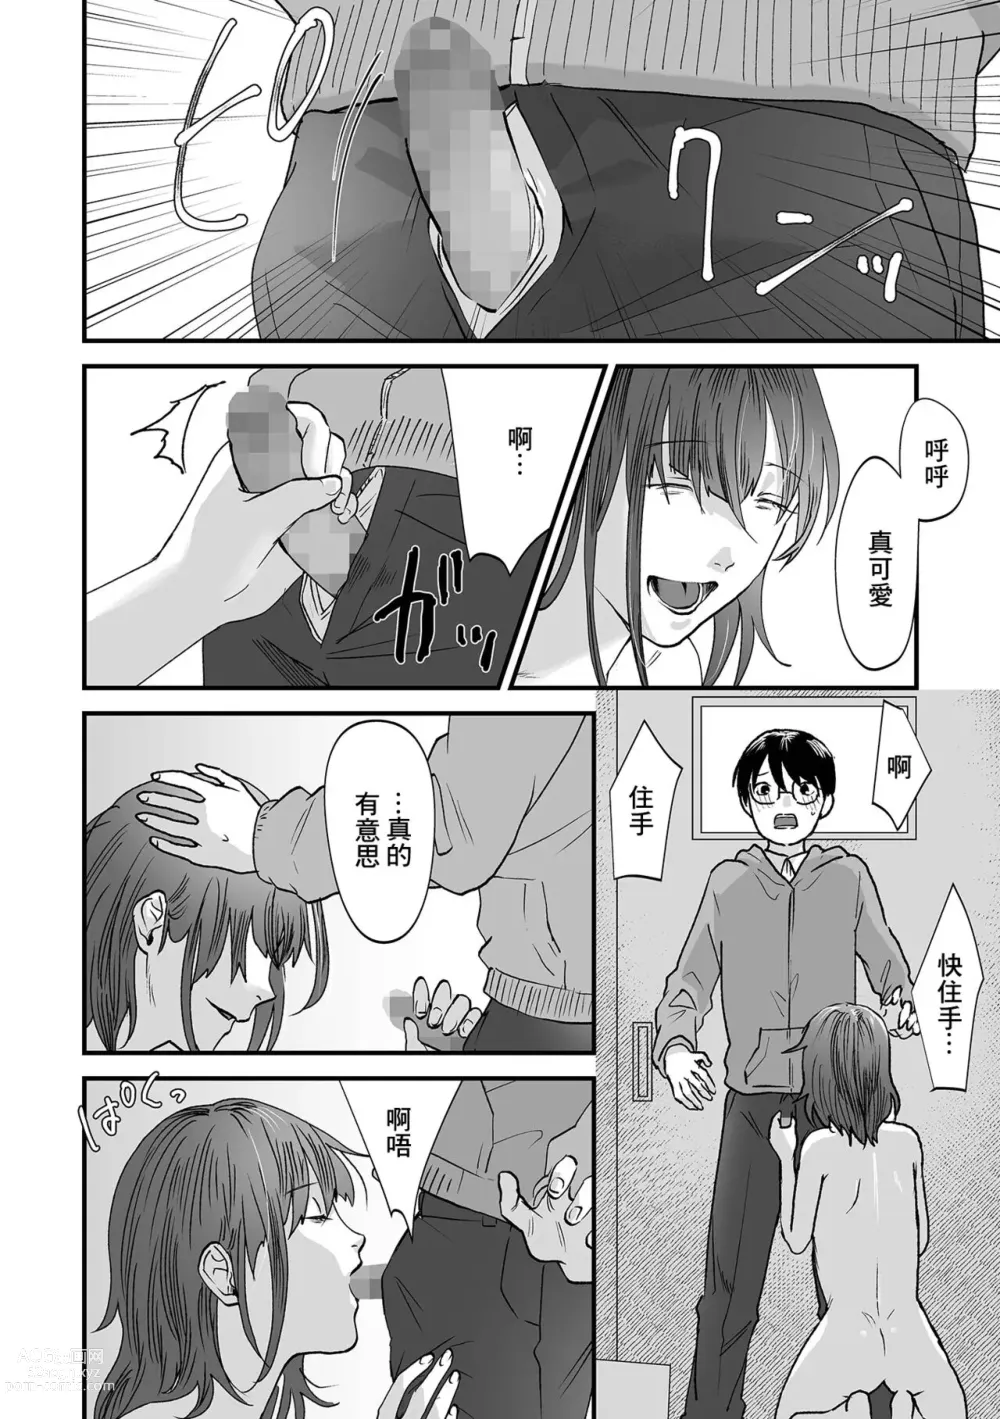 Page 4 of manga Kurai Tokoro e